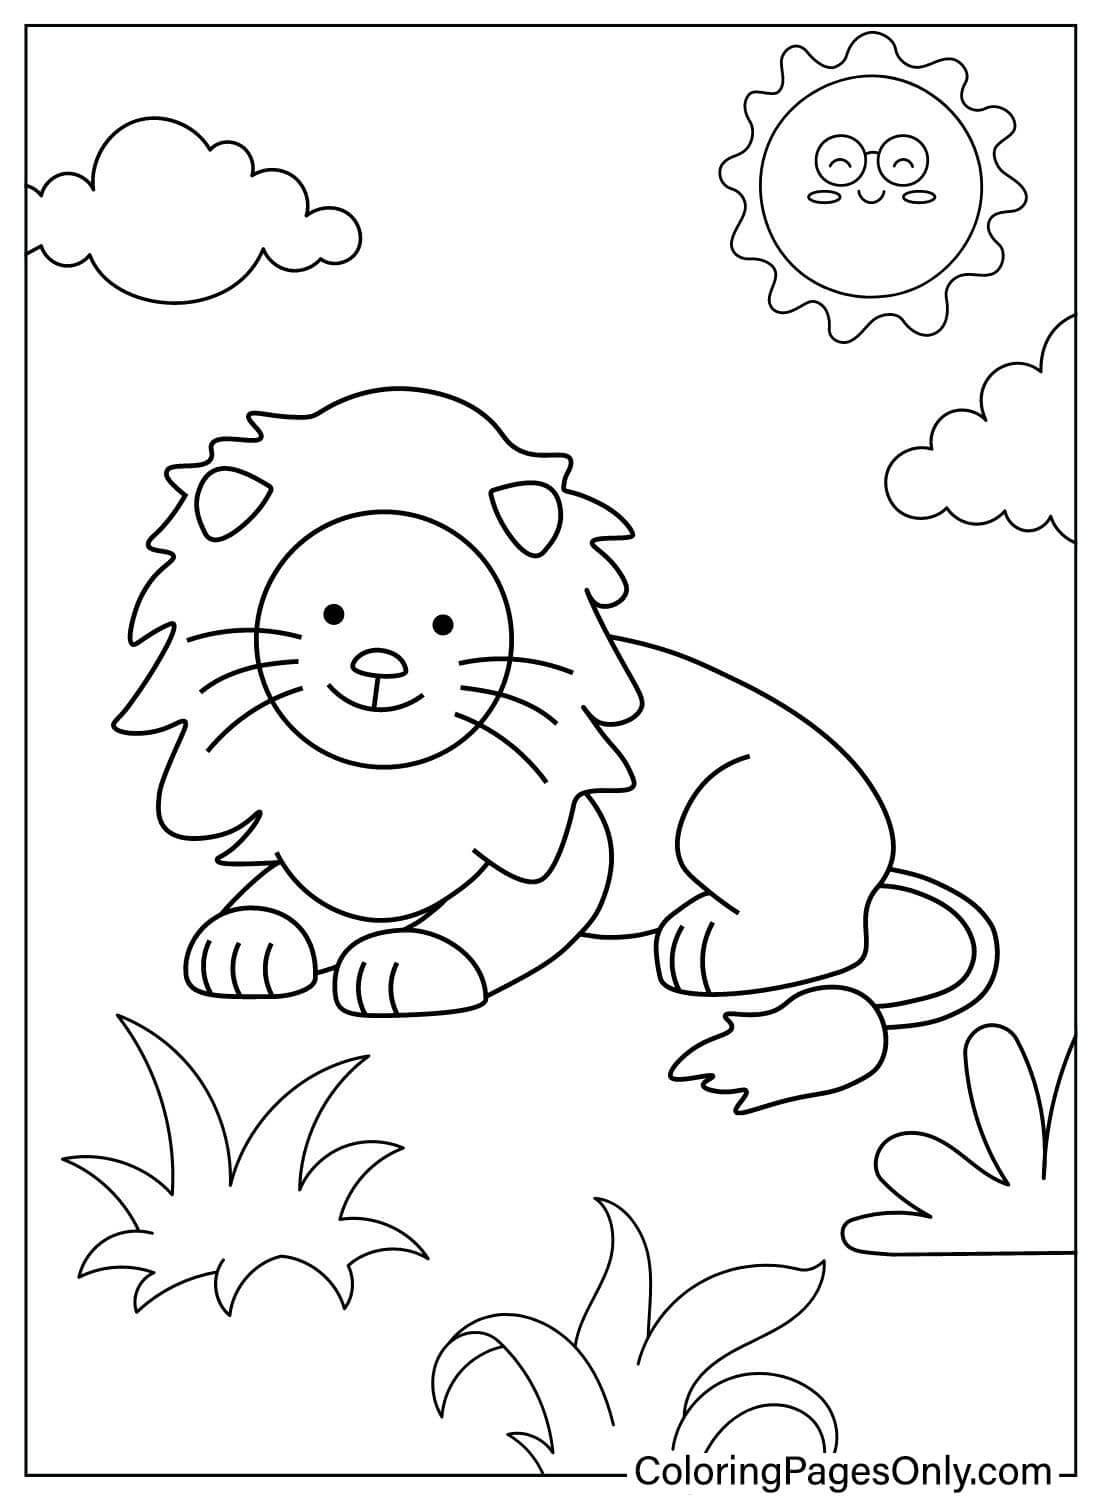 Colorir leão para imprimir do leão